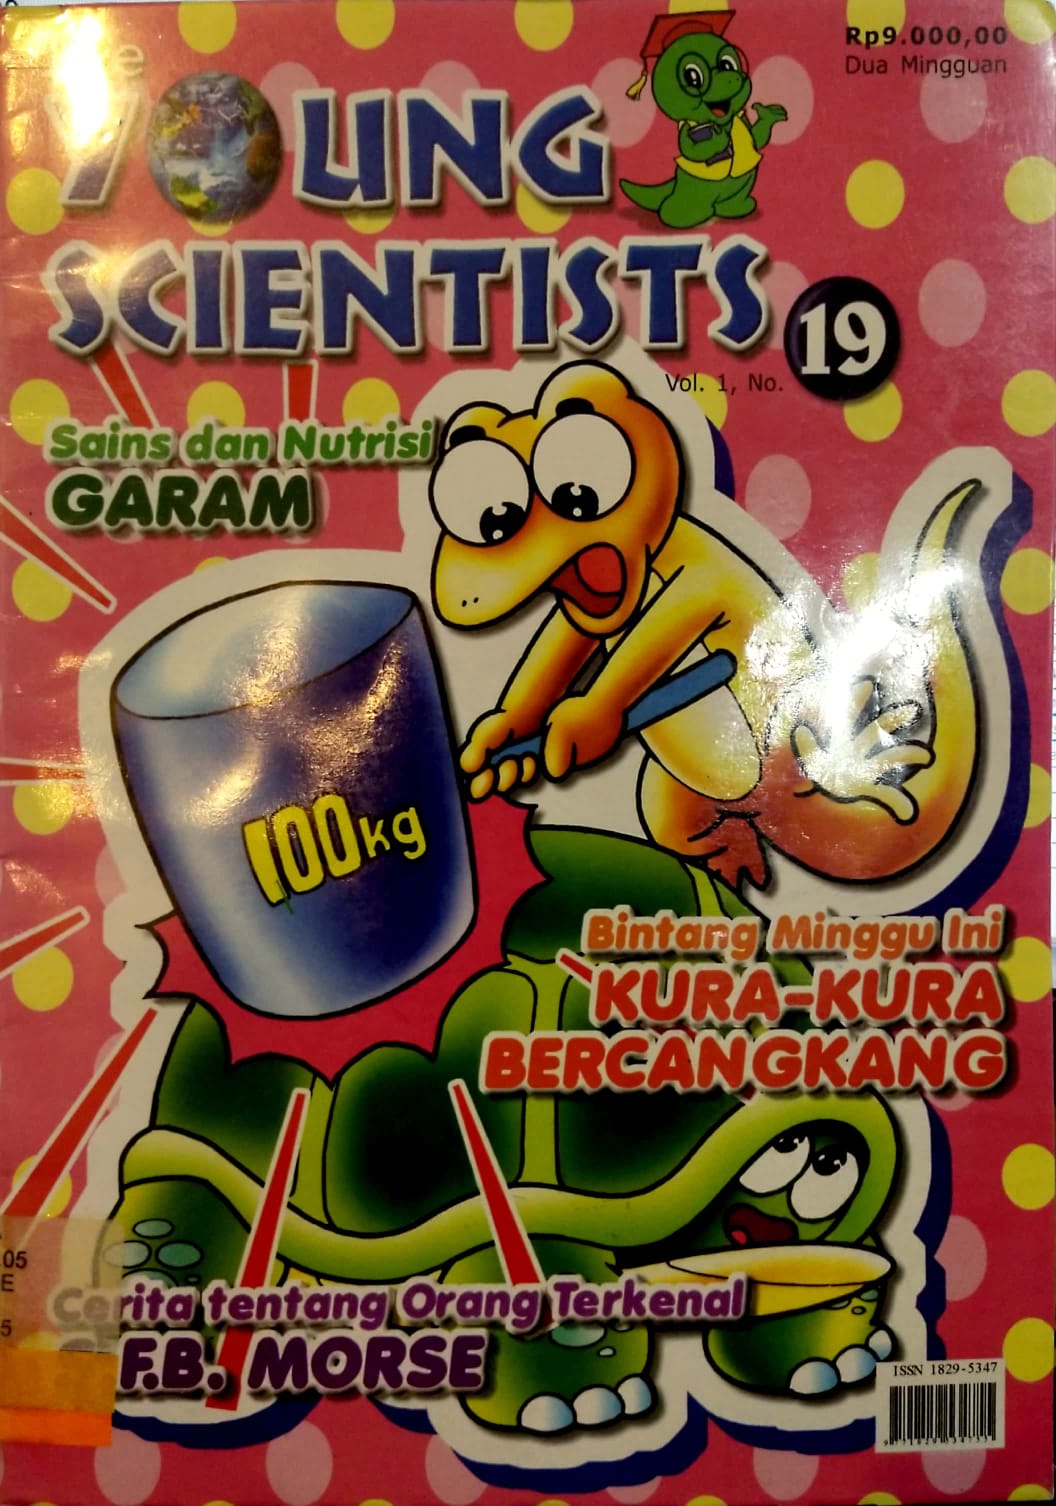 The Young Scientists Vol 1 No.19 :  Majalah Sains Untuk Anak-Anak